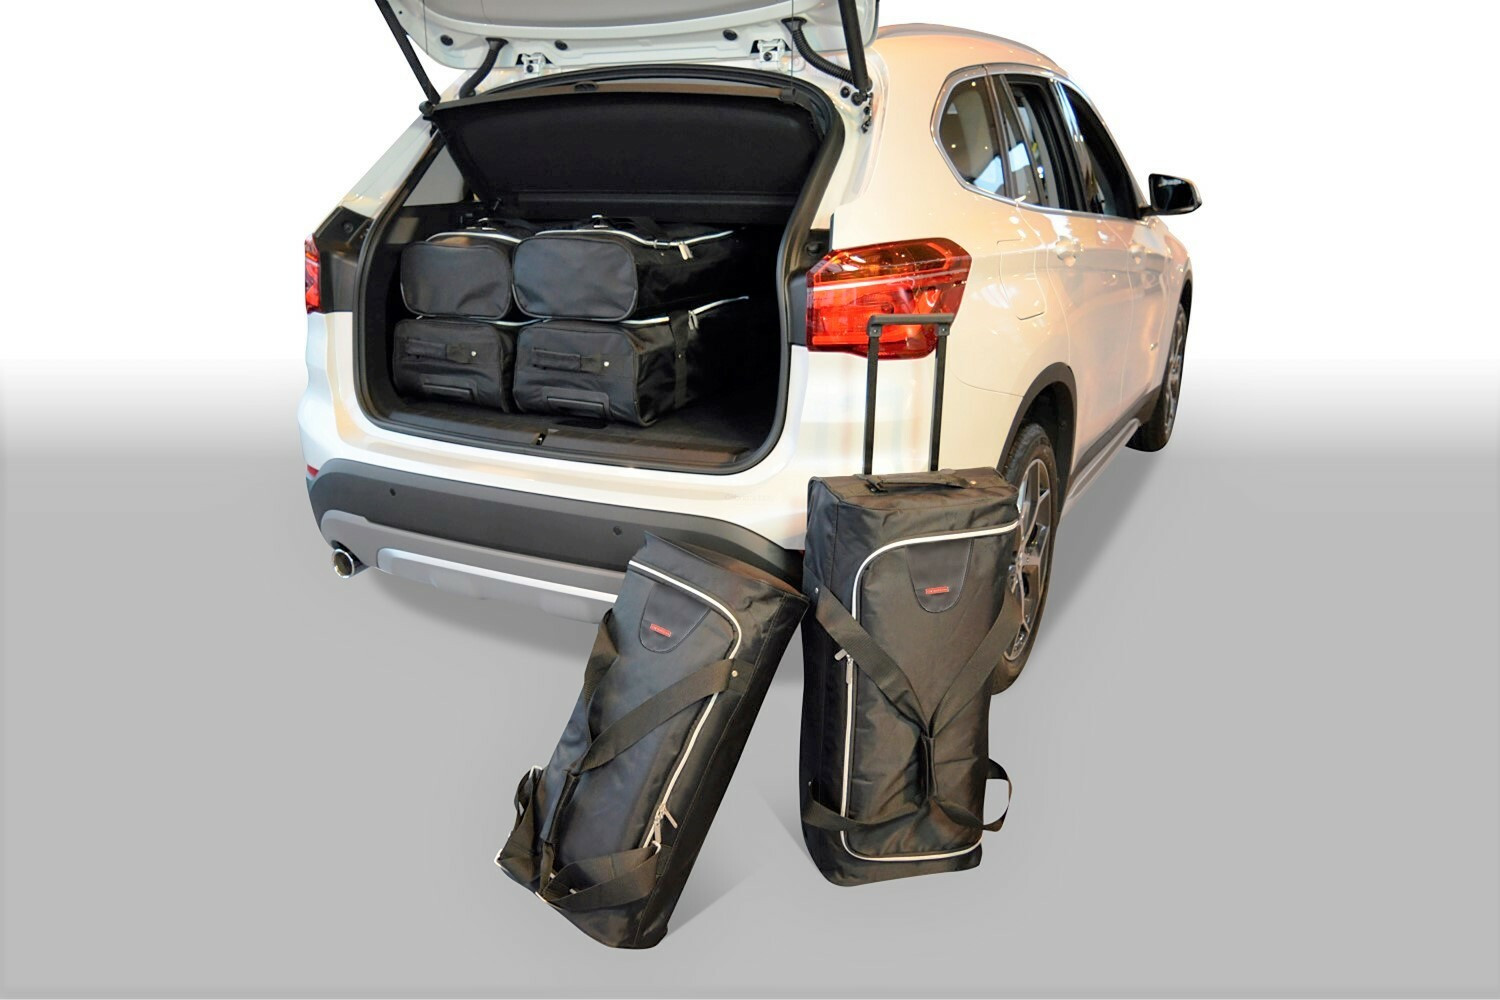 BMW X1 (E84) 2010-2015 Car-Bags travel bags